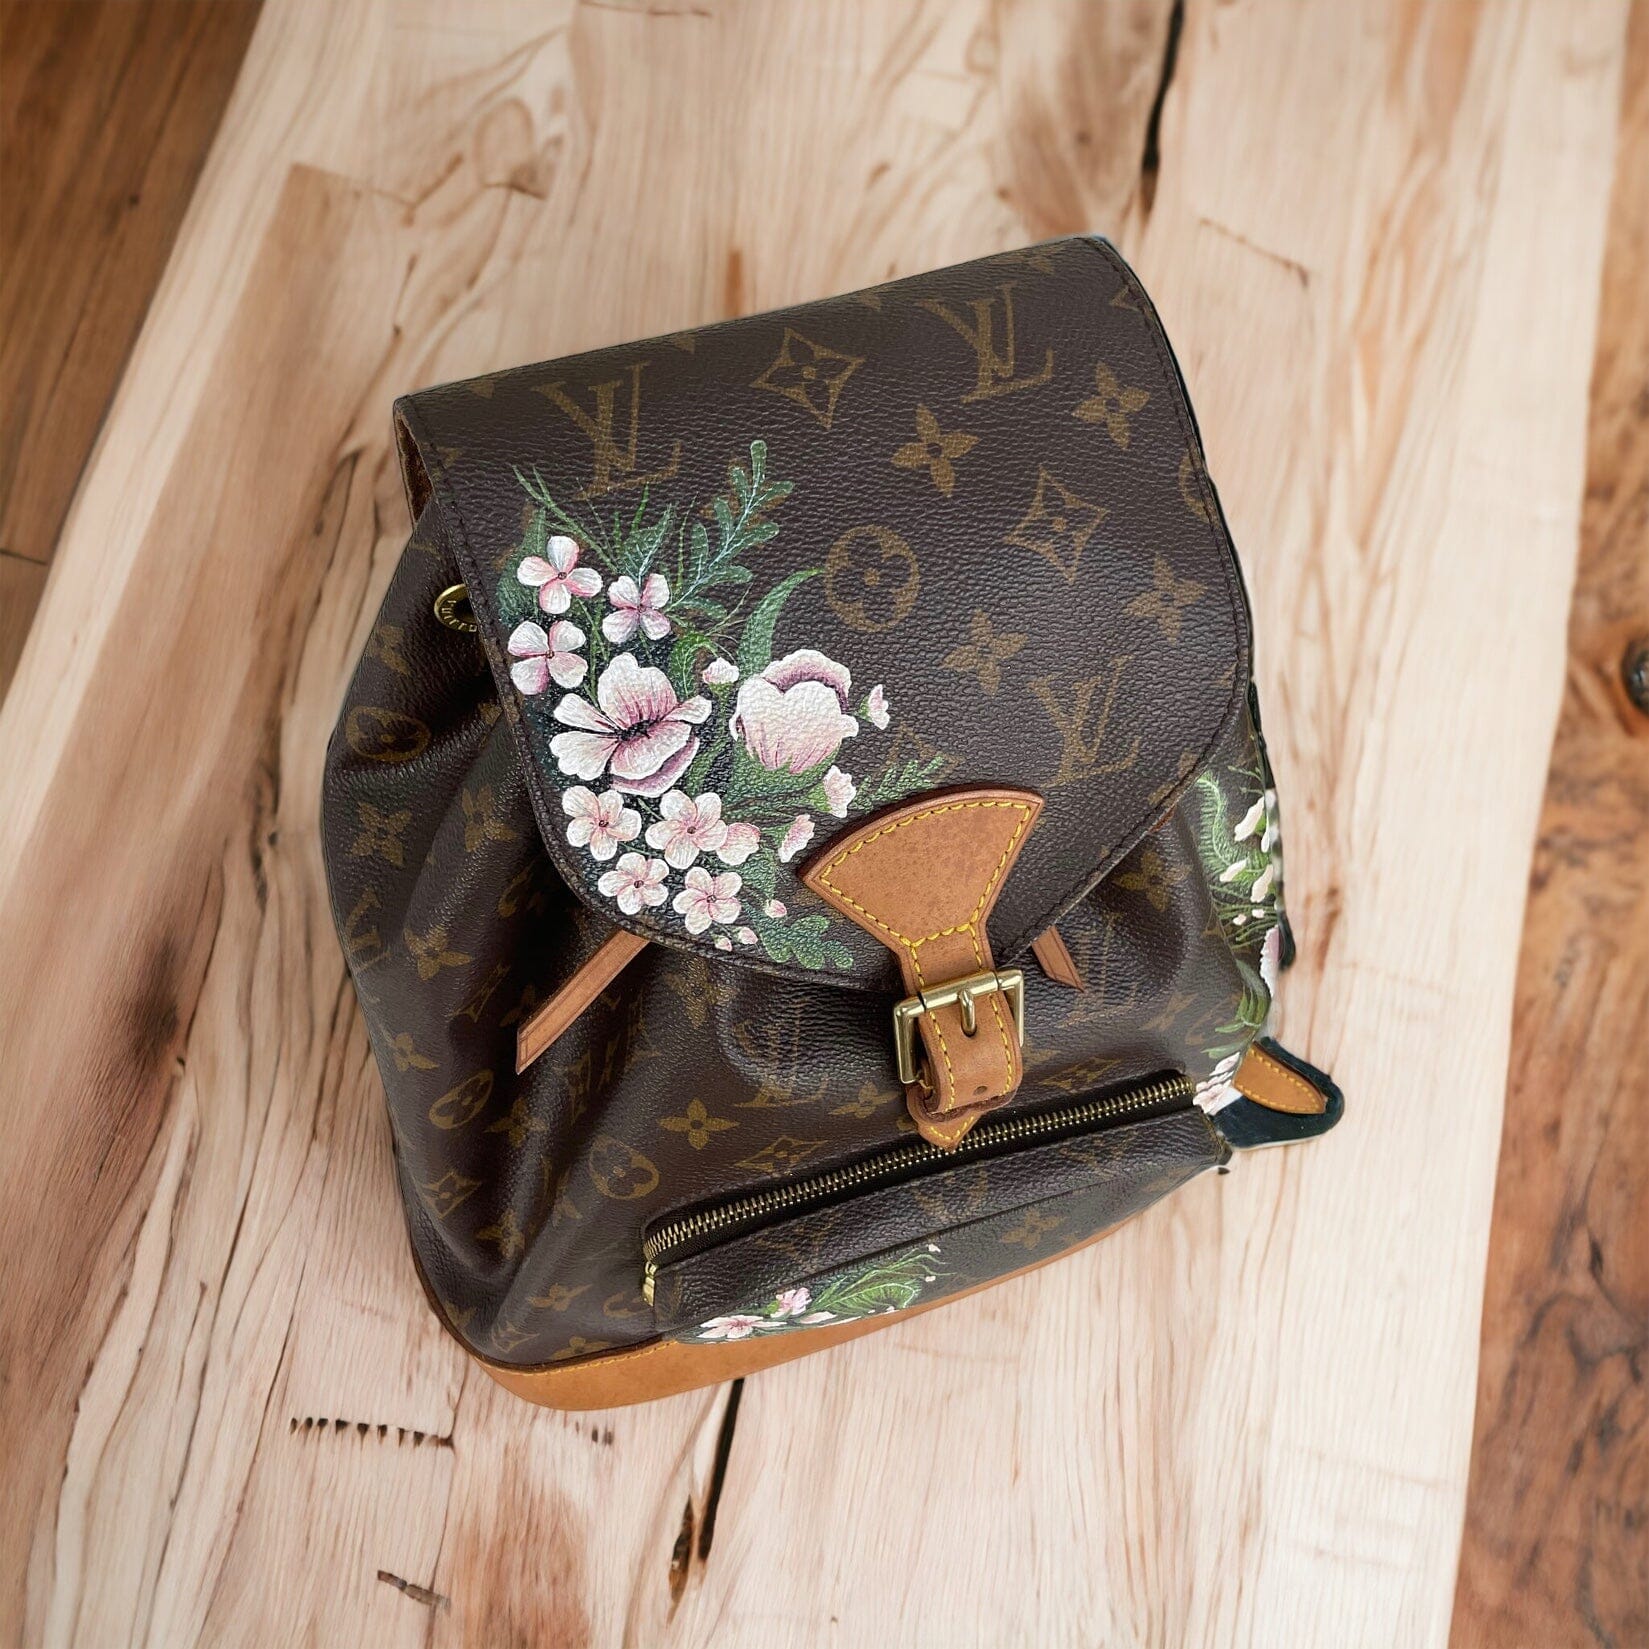 Gorgeous Authentic Louis Vuitton Monogram Montsouris GM Backpack Large Bag